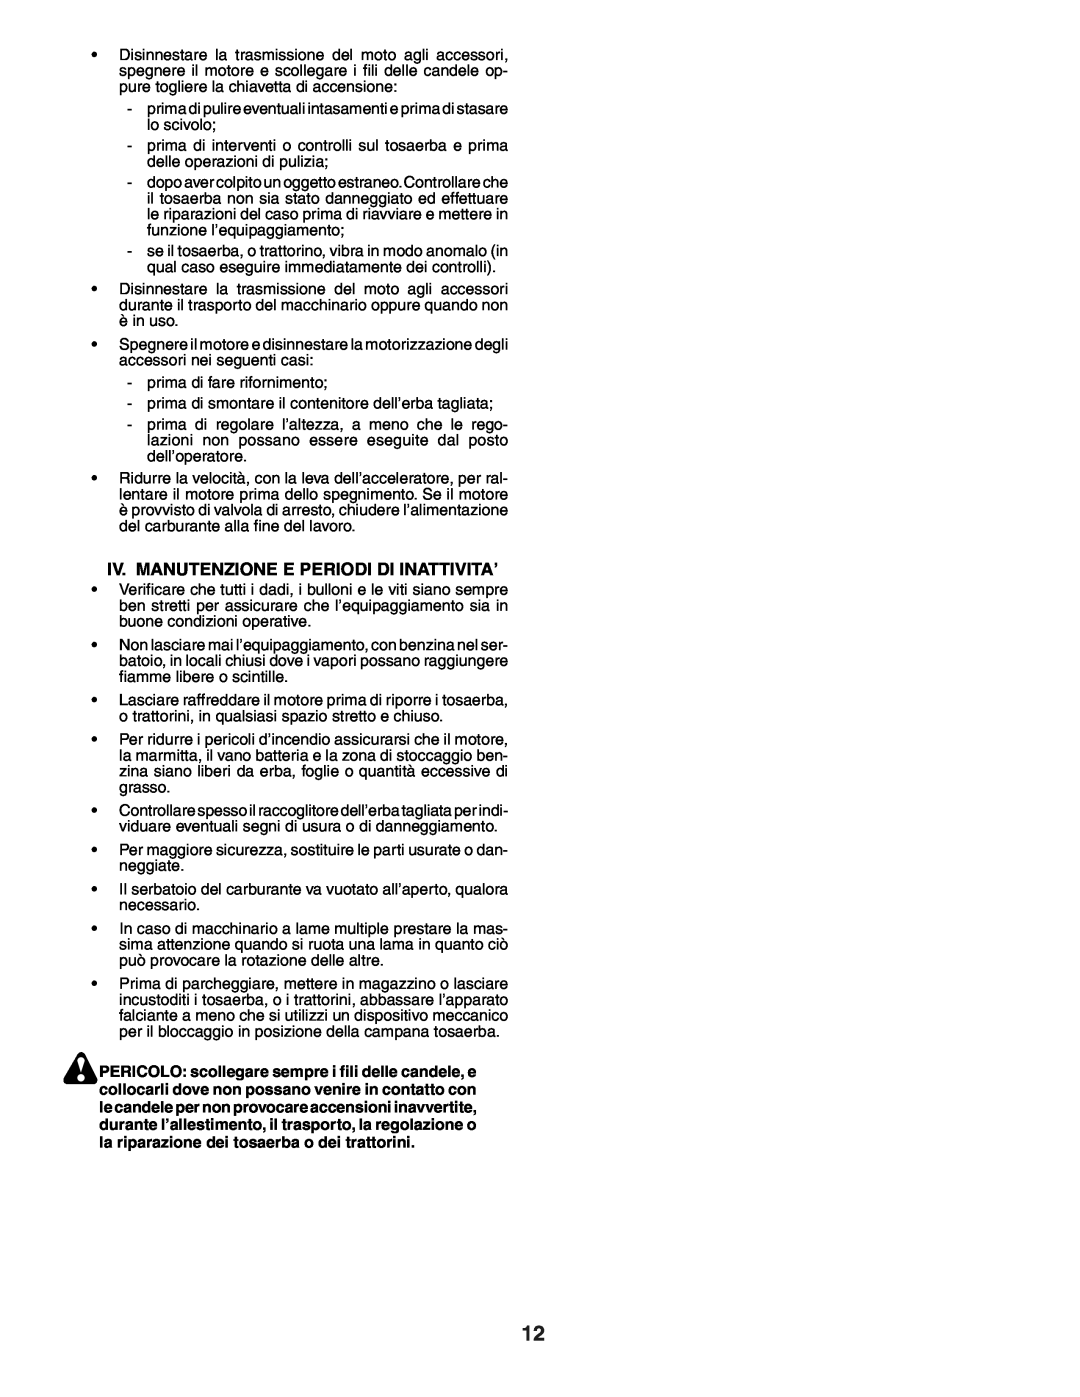 Husqvarna YTH150XP instruction manual Iv. Manutenzione E Periodi Di Inattivita’ 